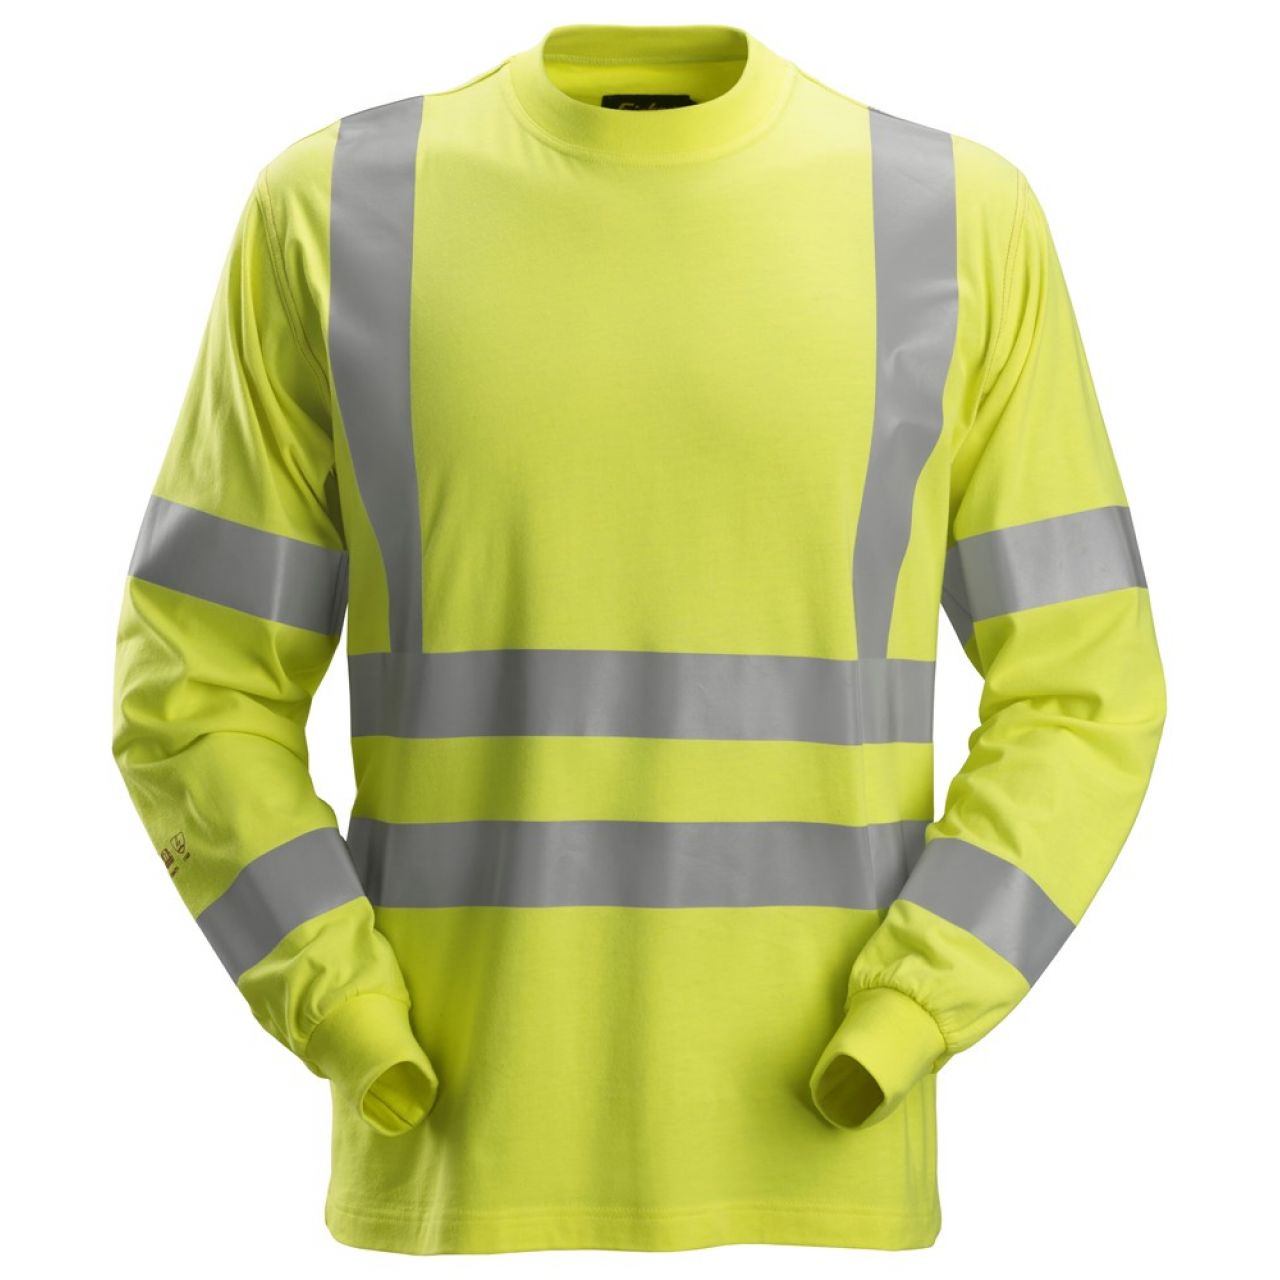 2461 Camiseta de manga larga ProtecWork de alta visibilidad clase 3 amarillo talla L